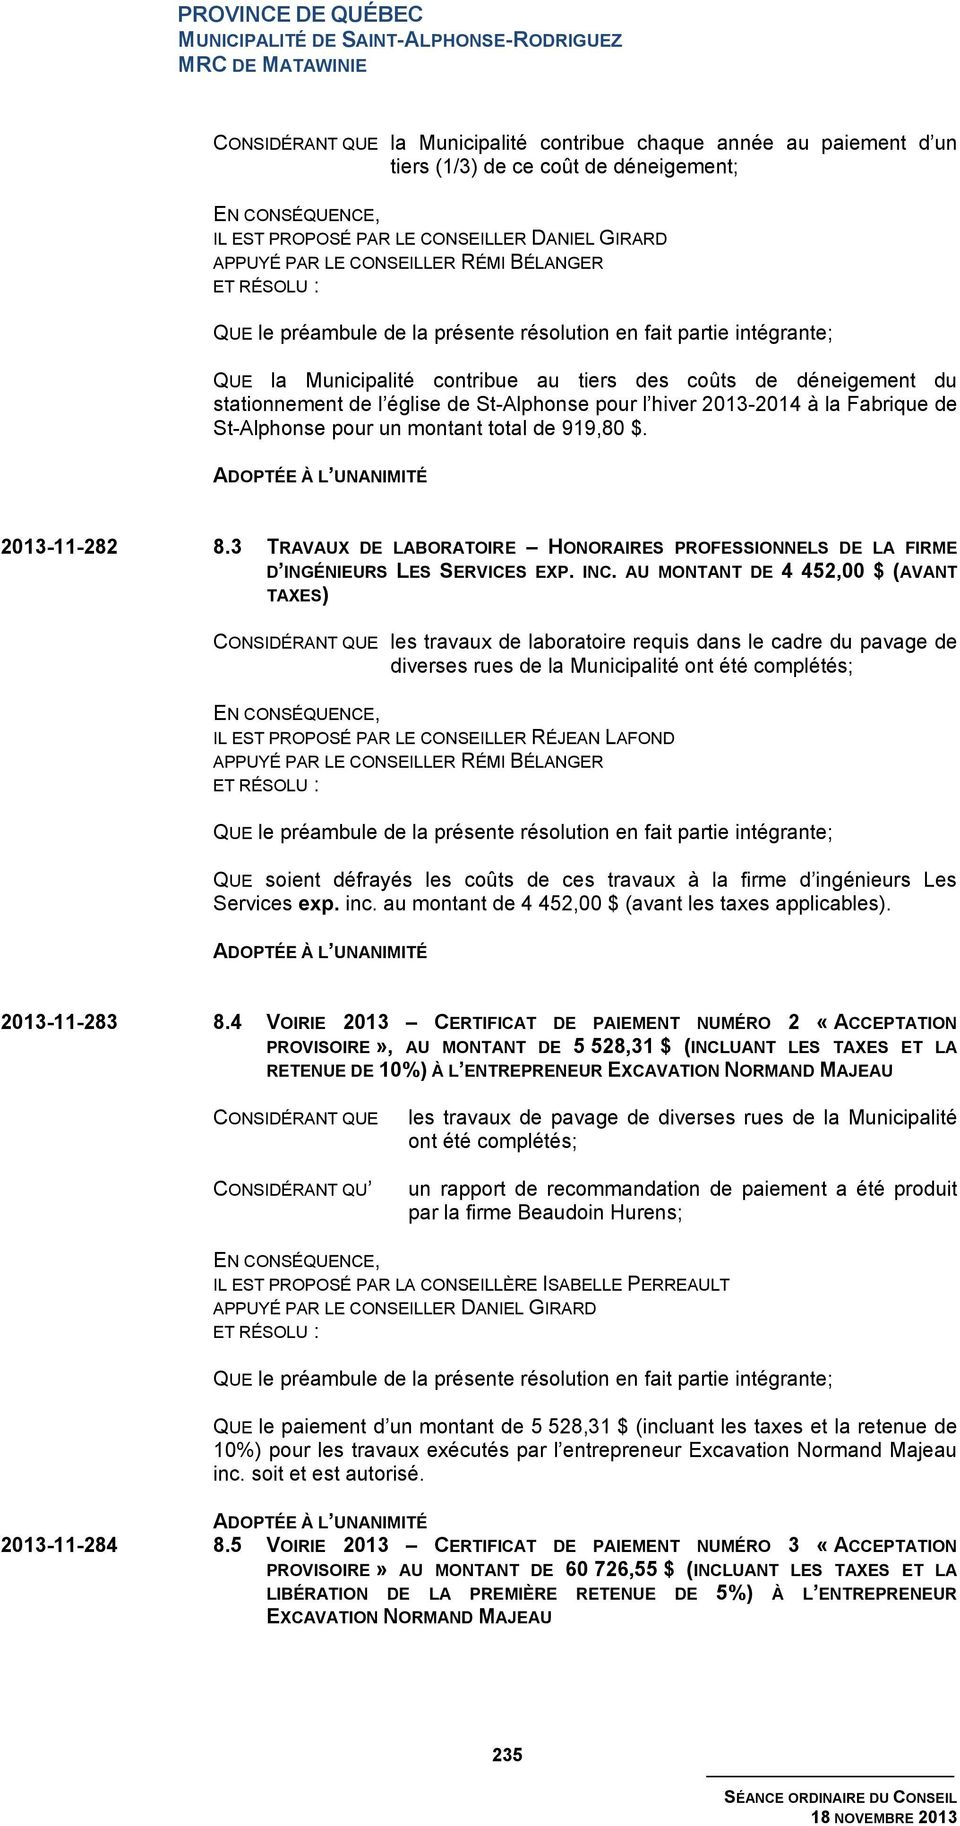 2013-11-282 8.3 TRAVAUX DE LABORATOIRE HONORAIRES PROFESSIONNELS DE LA FIRME D INGÉNIEURS LES SERVICES EXP. INC.